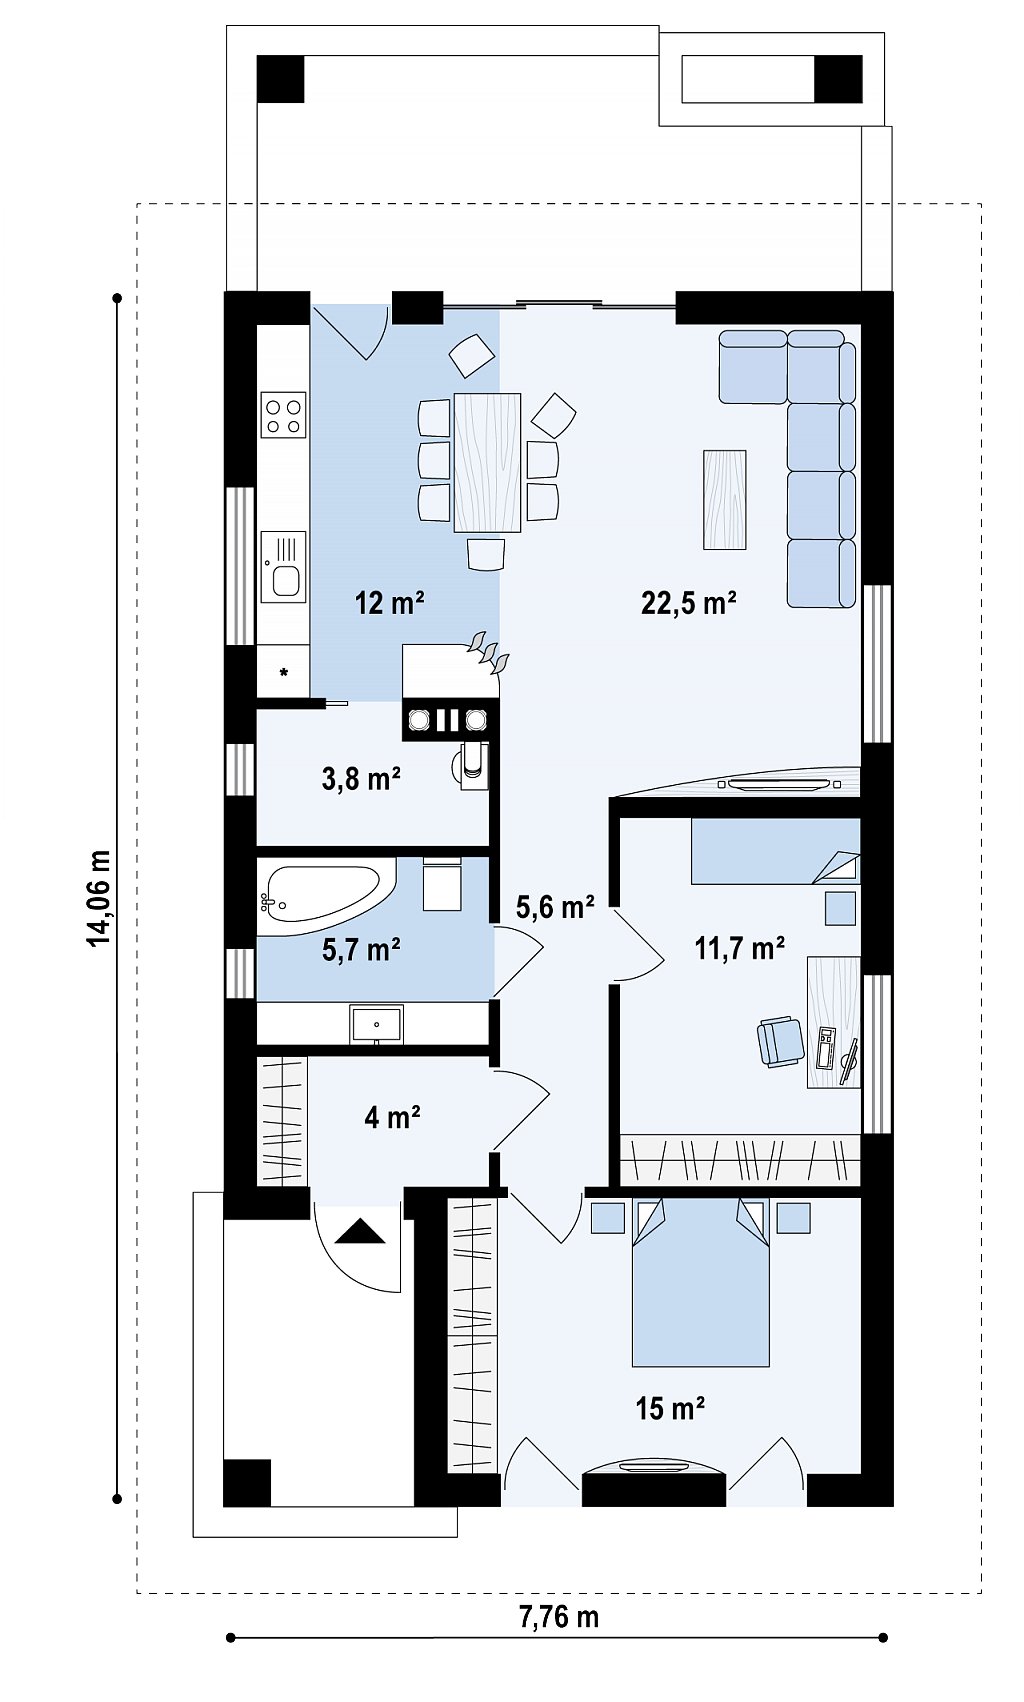 Одноэтажный функциональный дом для небольшой семьи план помещений 1